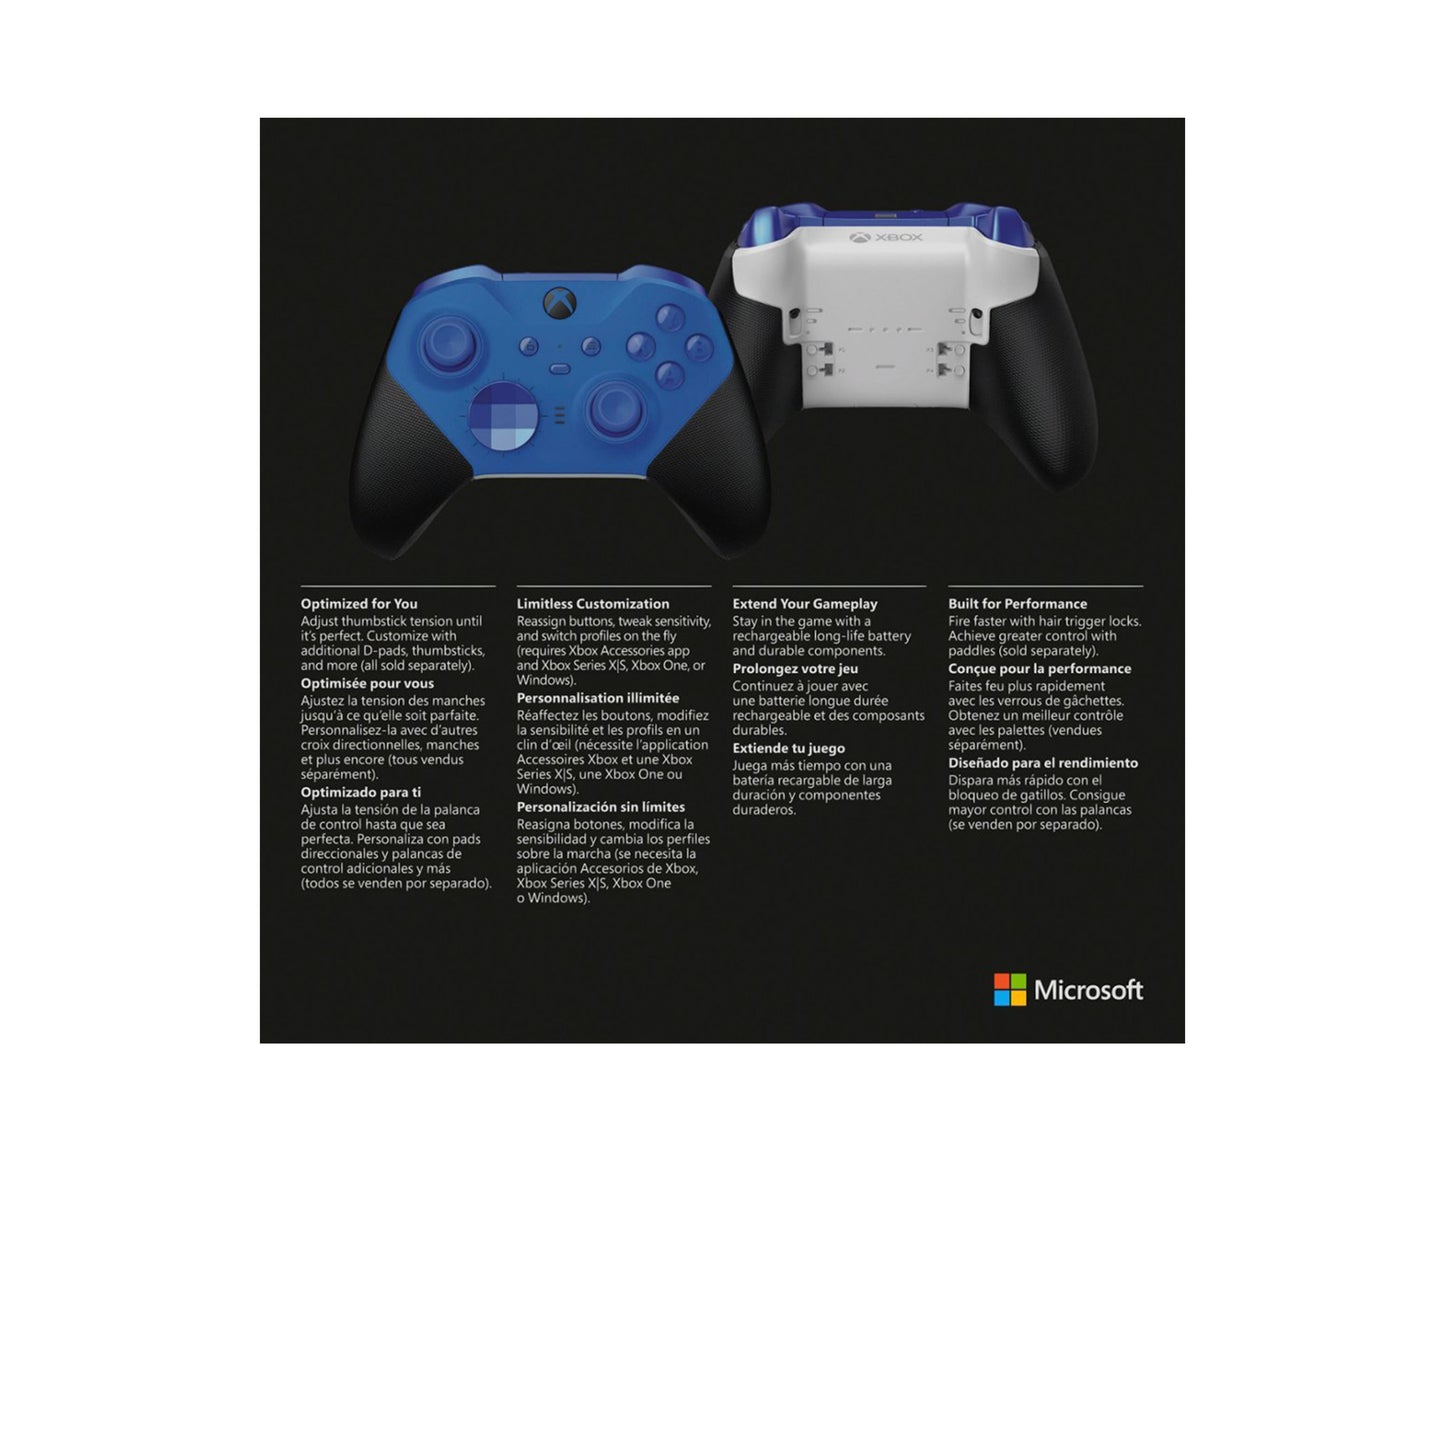 مايكروسوفت - وحدة التحكم اللاسلكية Elite Series 2 Core لأجهزة Xbox Series X وXbox Series S وXbox One وأجهزة الكمبيوتر التي تعمل بنظام Windows - أزرق 